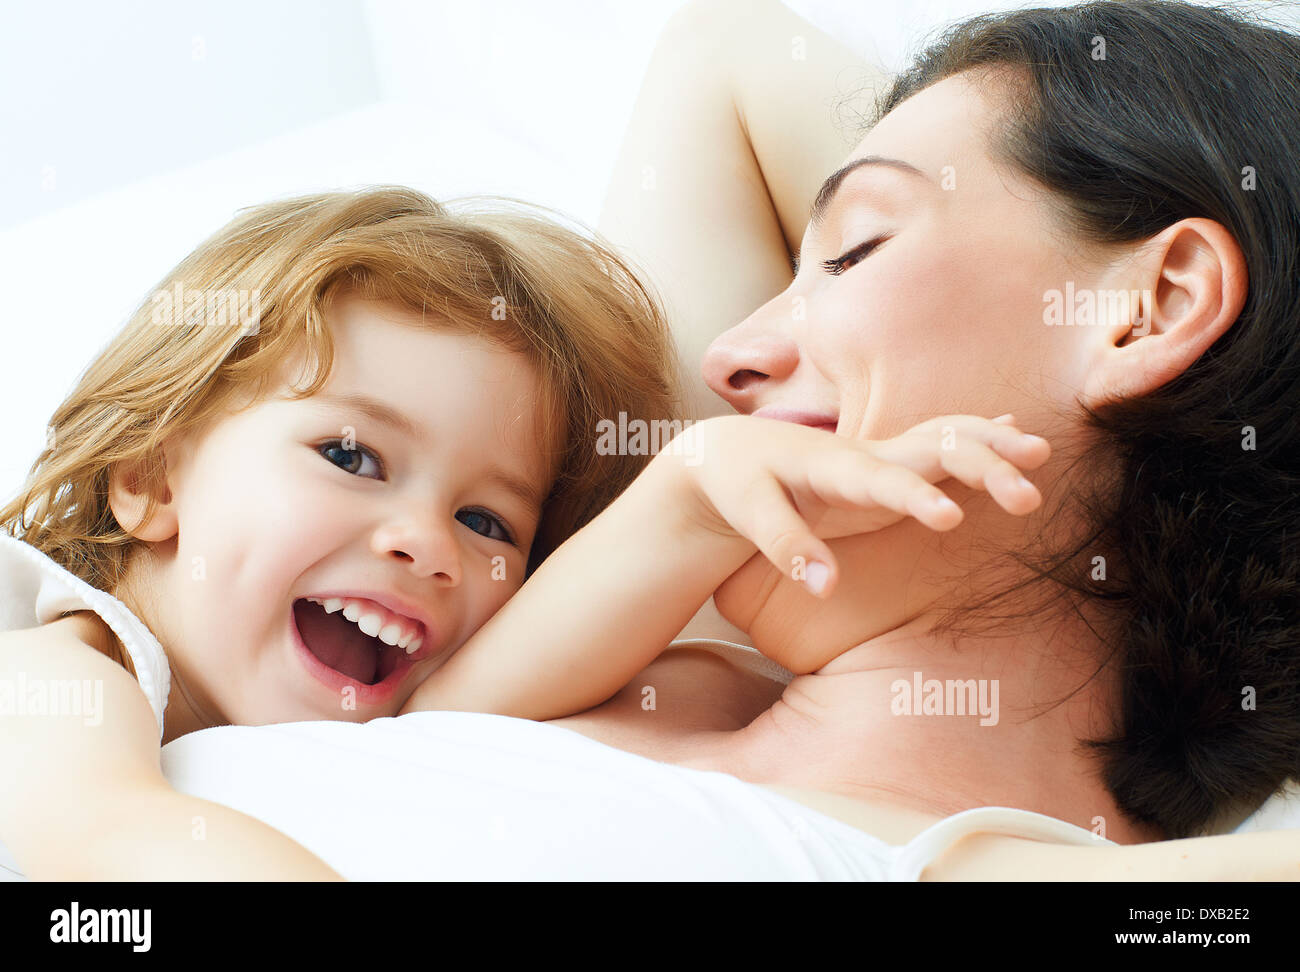 La figlia e la madre sono felici insieme Foto Stock